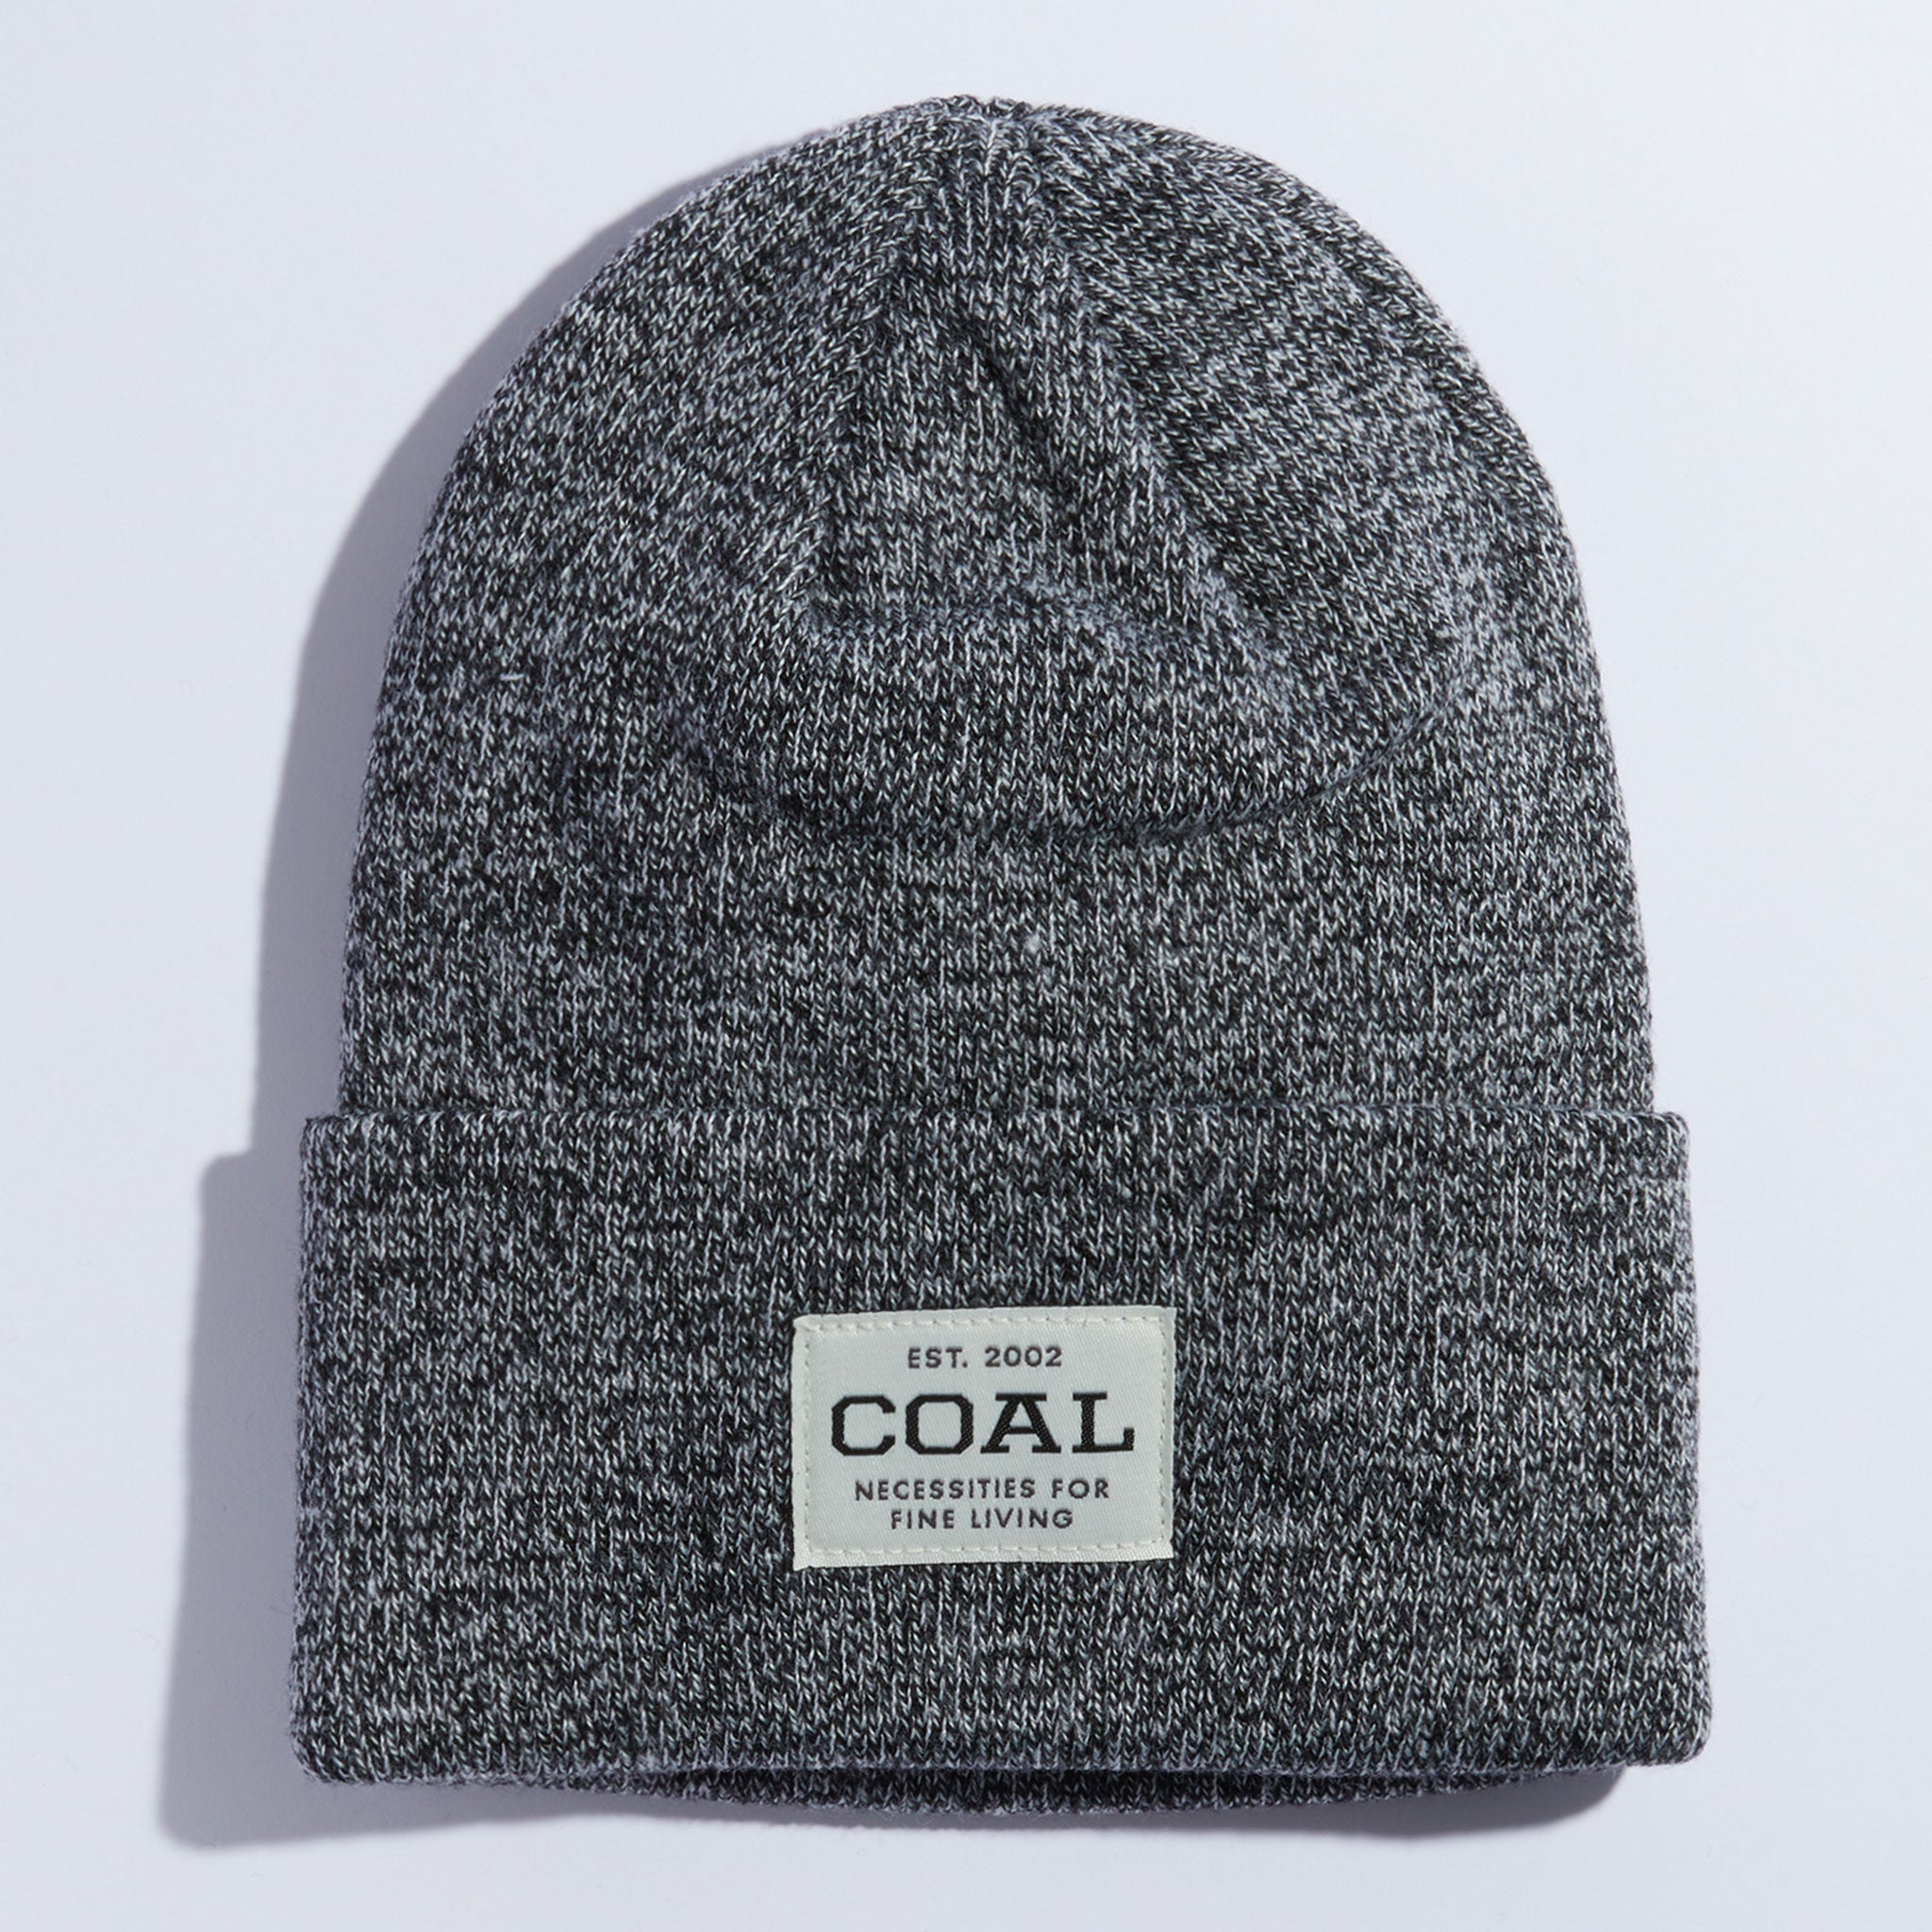 The Uniform Acrylic Beanie Knit Headwear Coal Cuff 